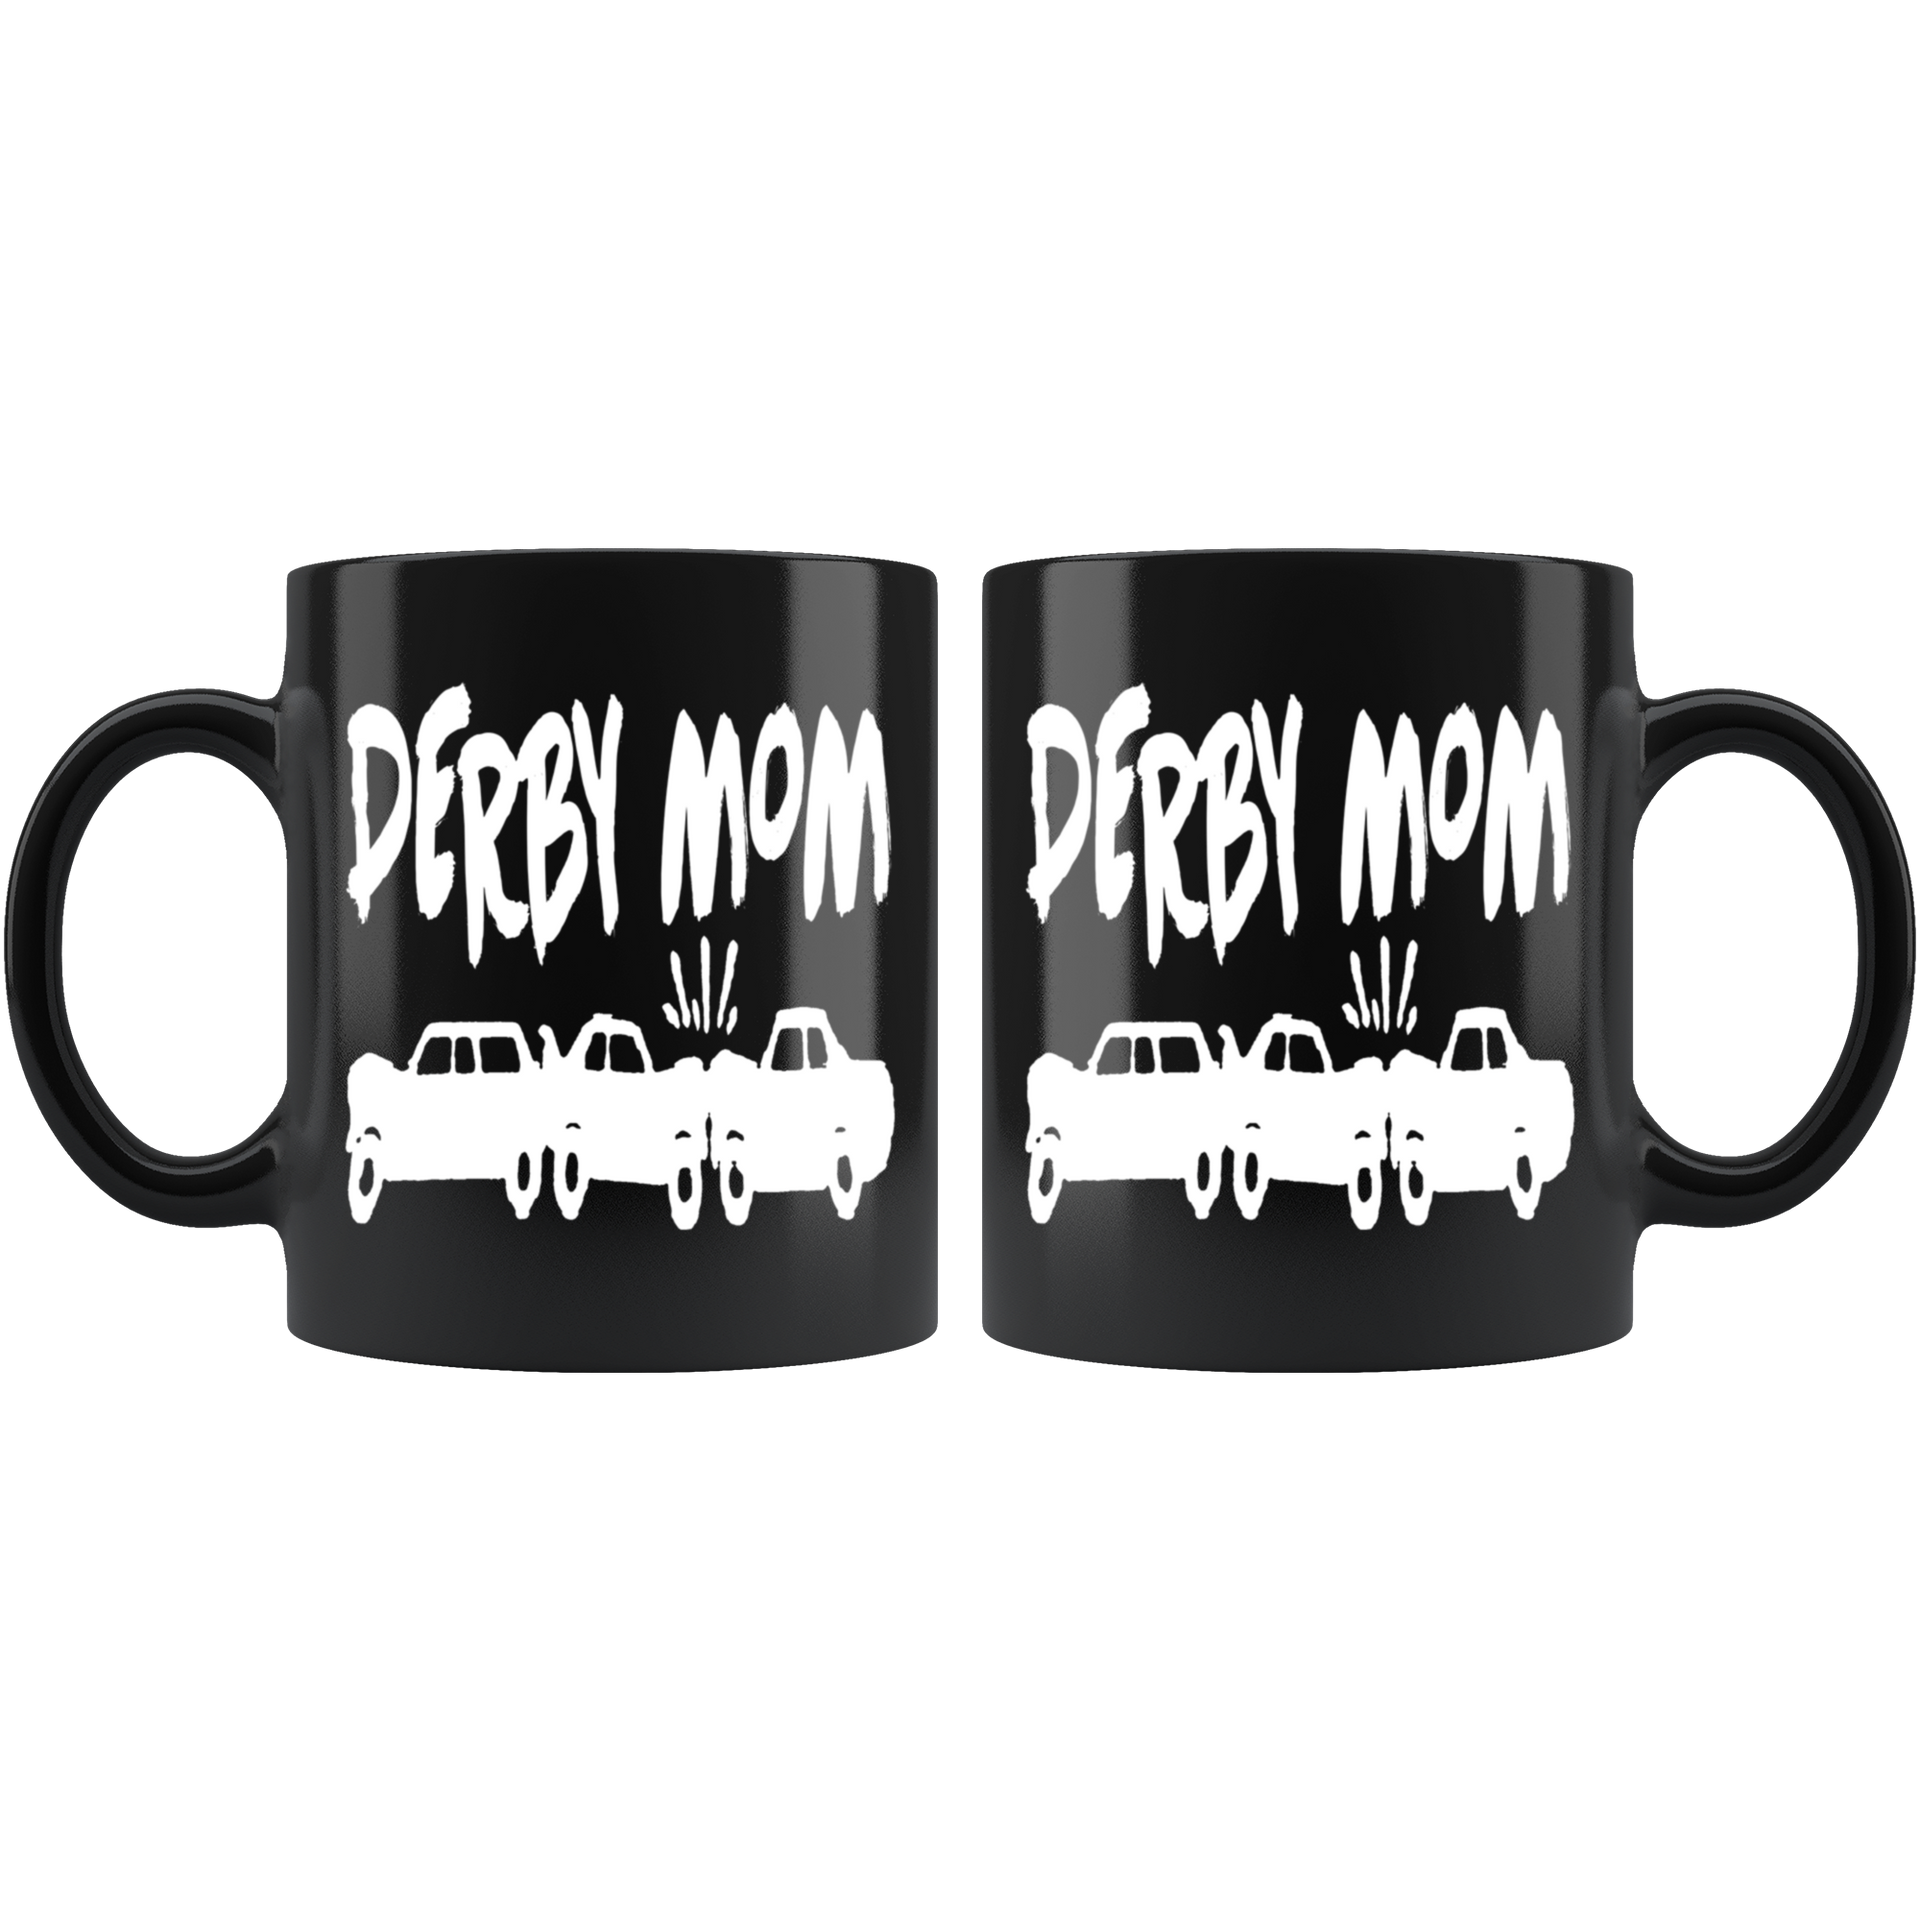 Demolition Derby Mom Mug